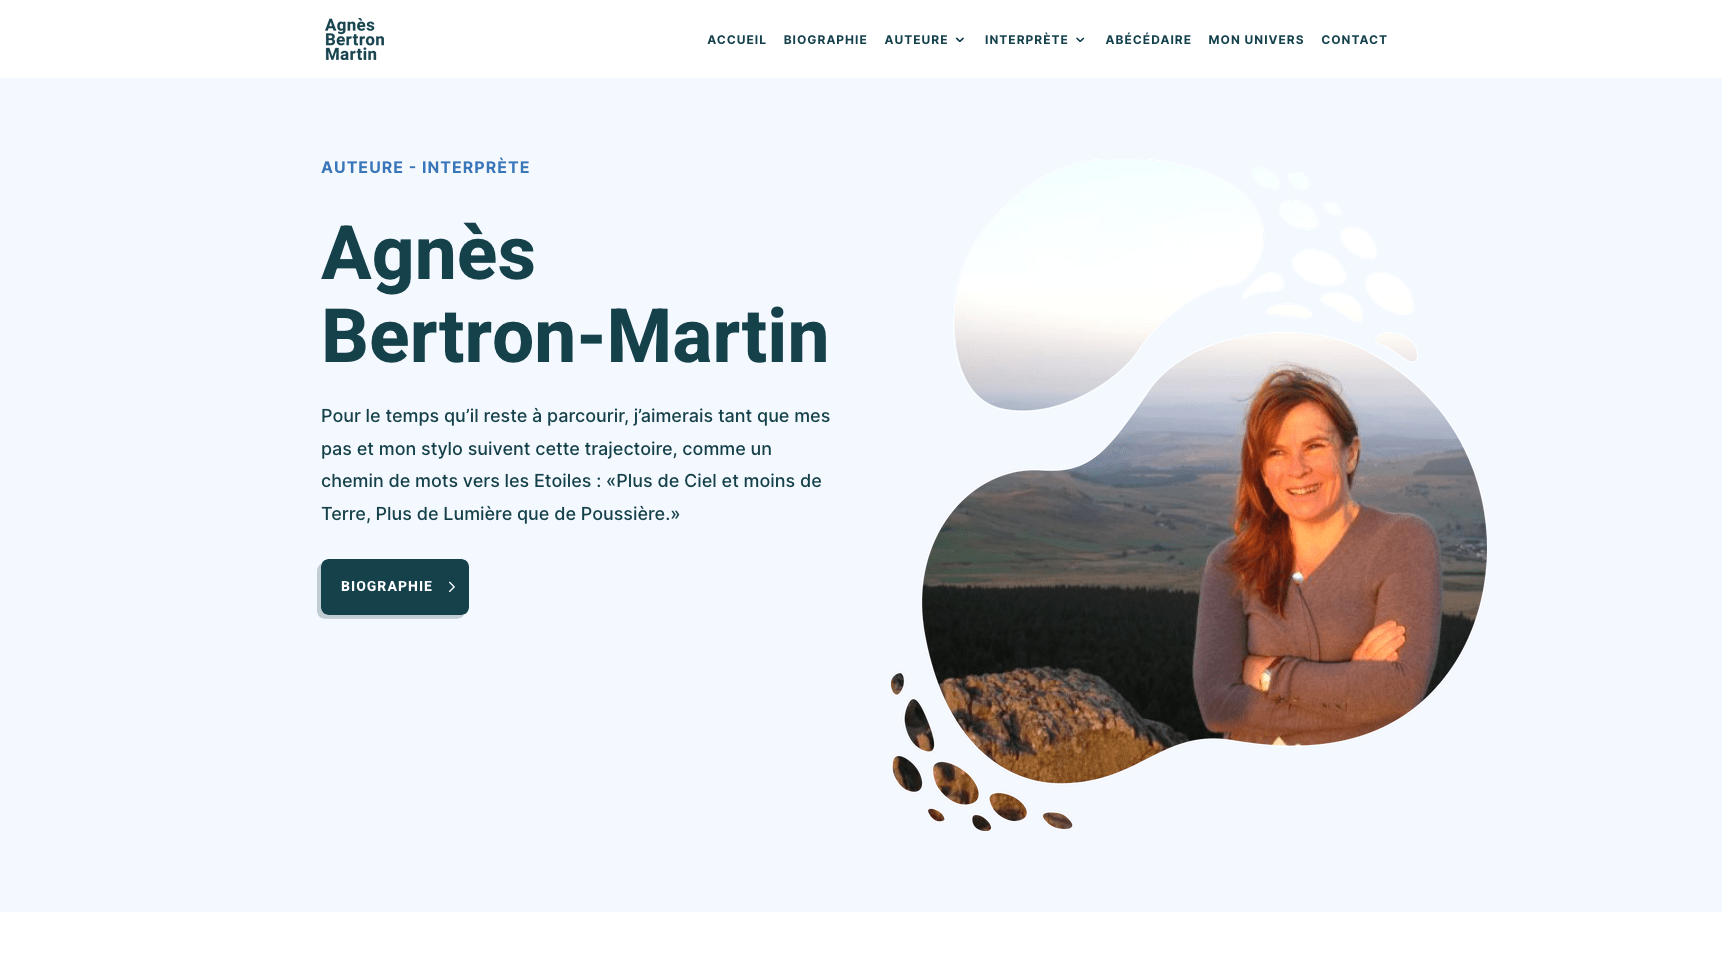 Agnès Bertron-Martin